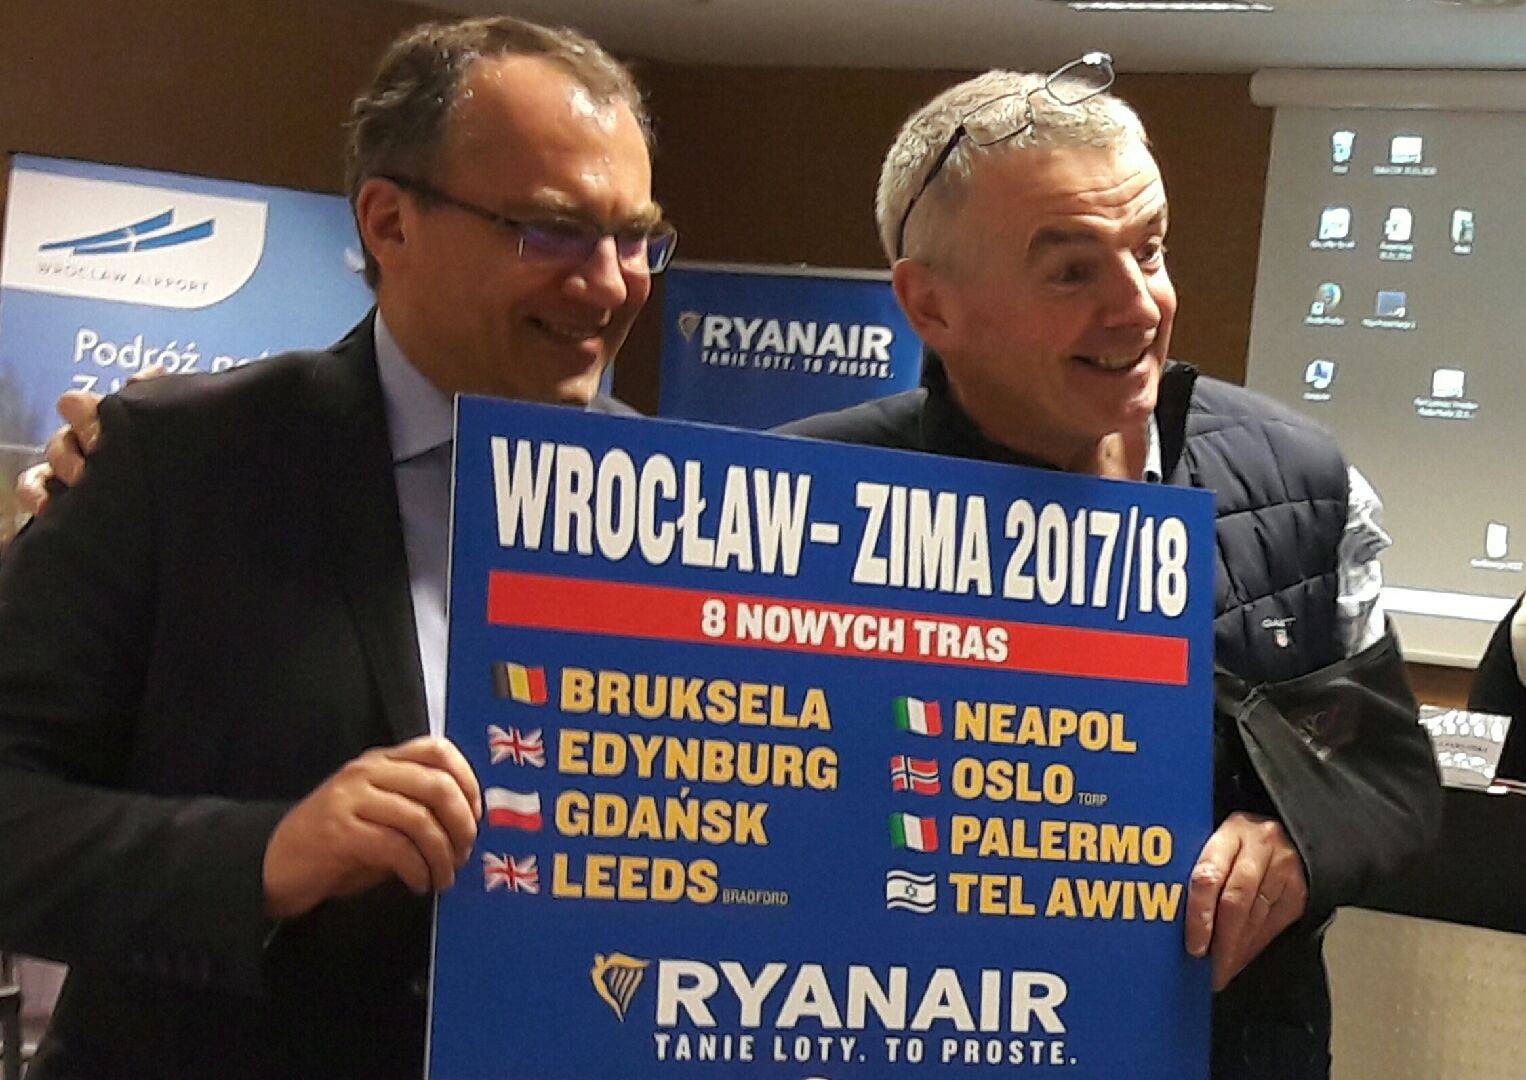 Ryanair Ogłasza Rekordowy Rozkład Lotów Z Wrocławia Na Zimę 2017/18